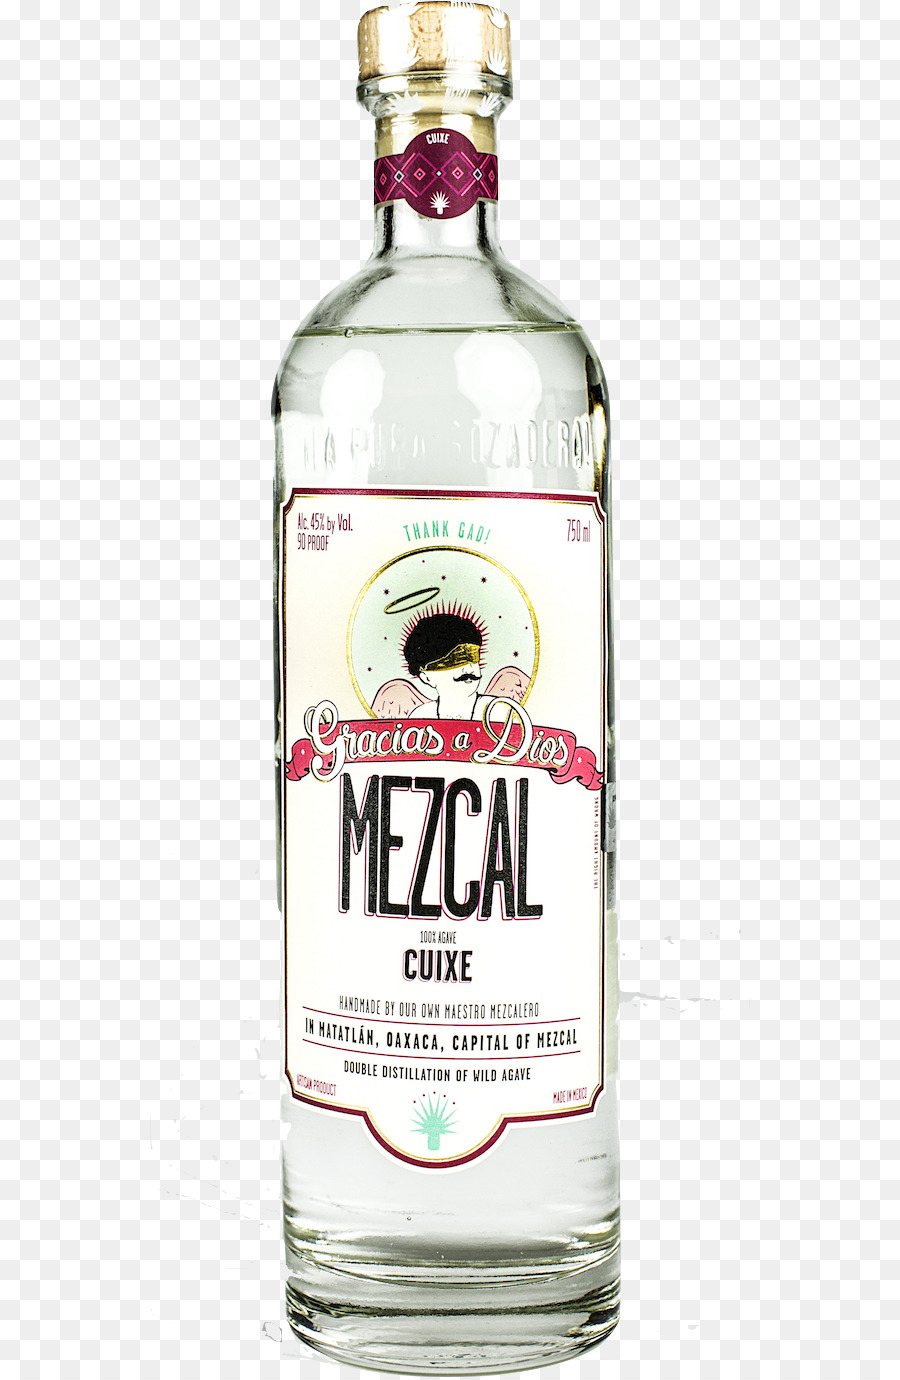 Likör, Mezcal, Tequila, Gin und tonic Sotol - Mezcal